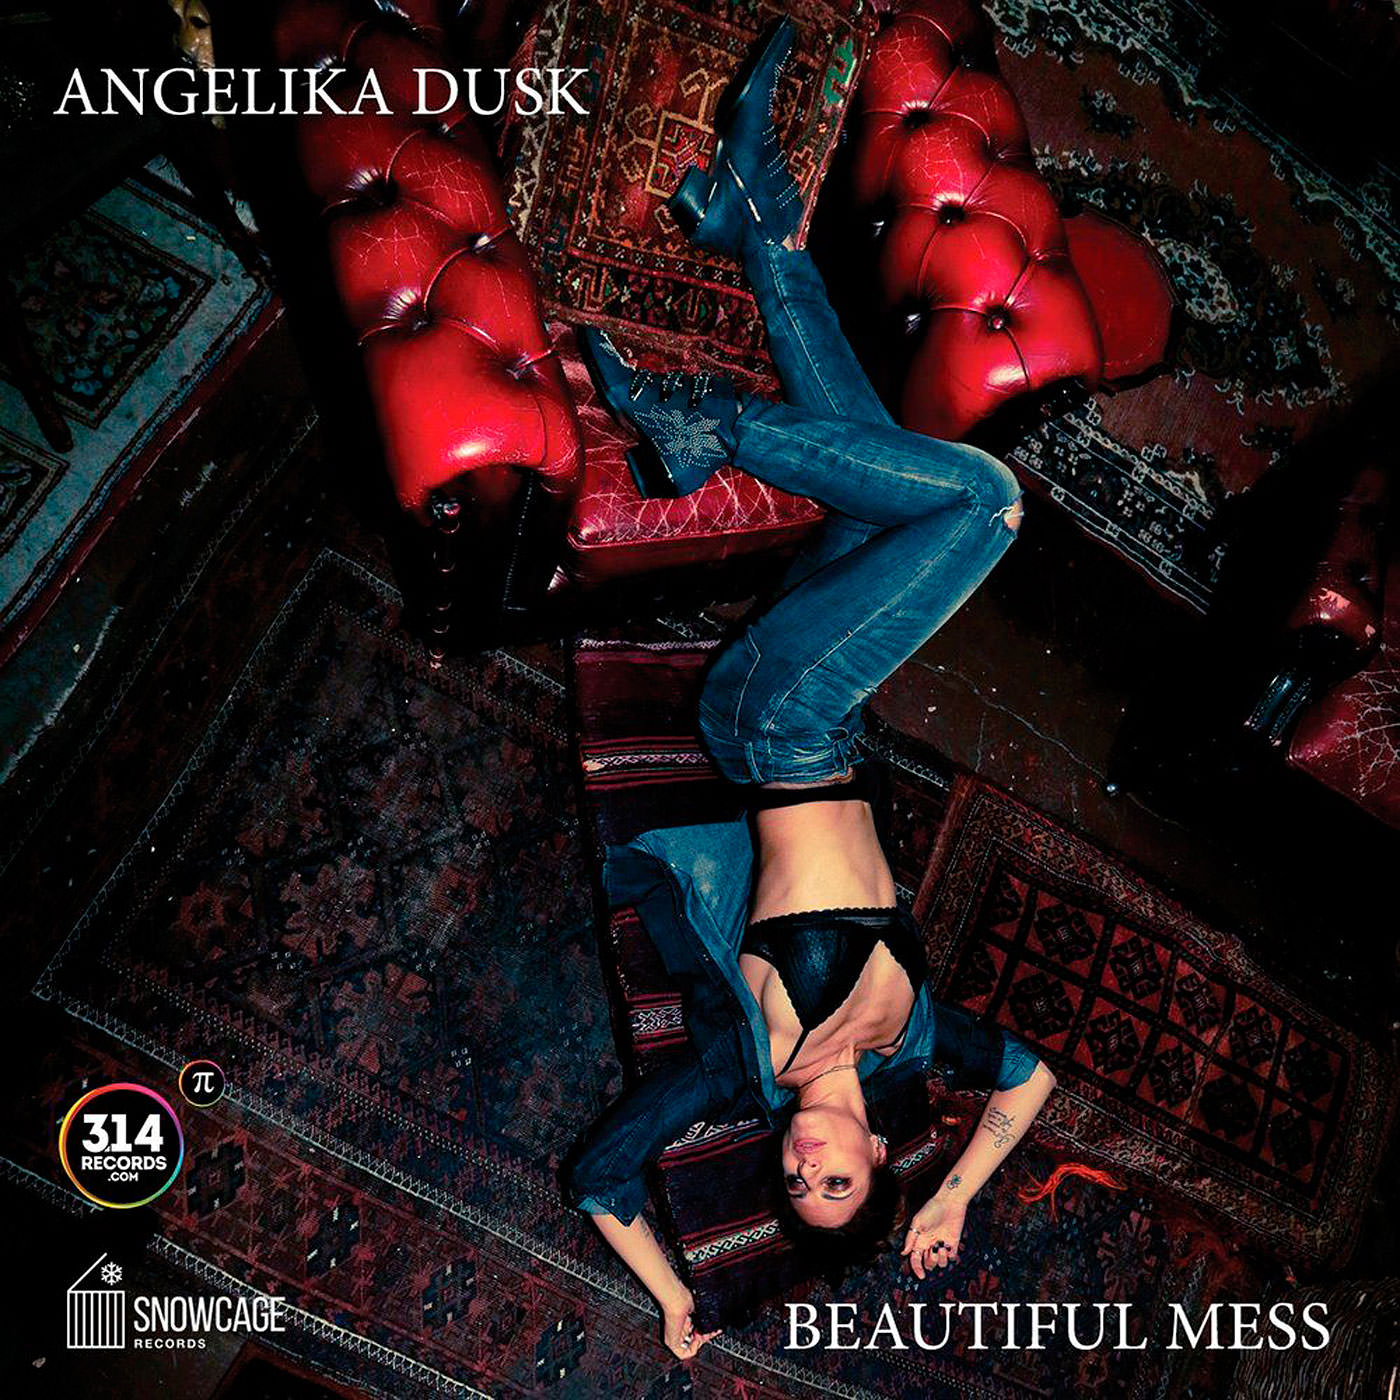 Angelika Dusk – Beautiful Mess (2018) [Qobuz FLAC 24bit/44,1kHz]